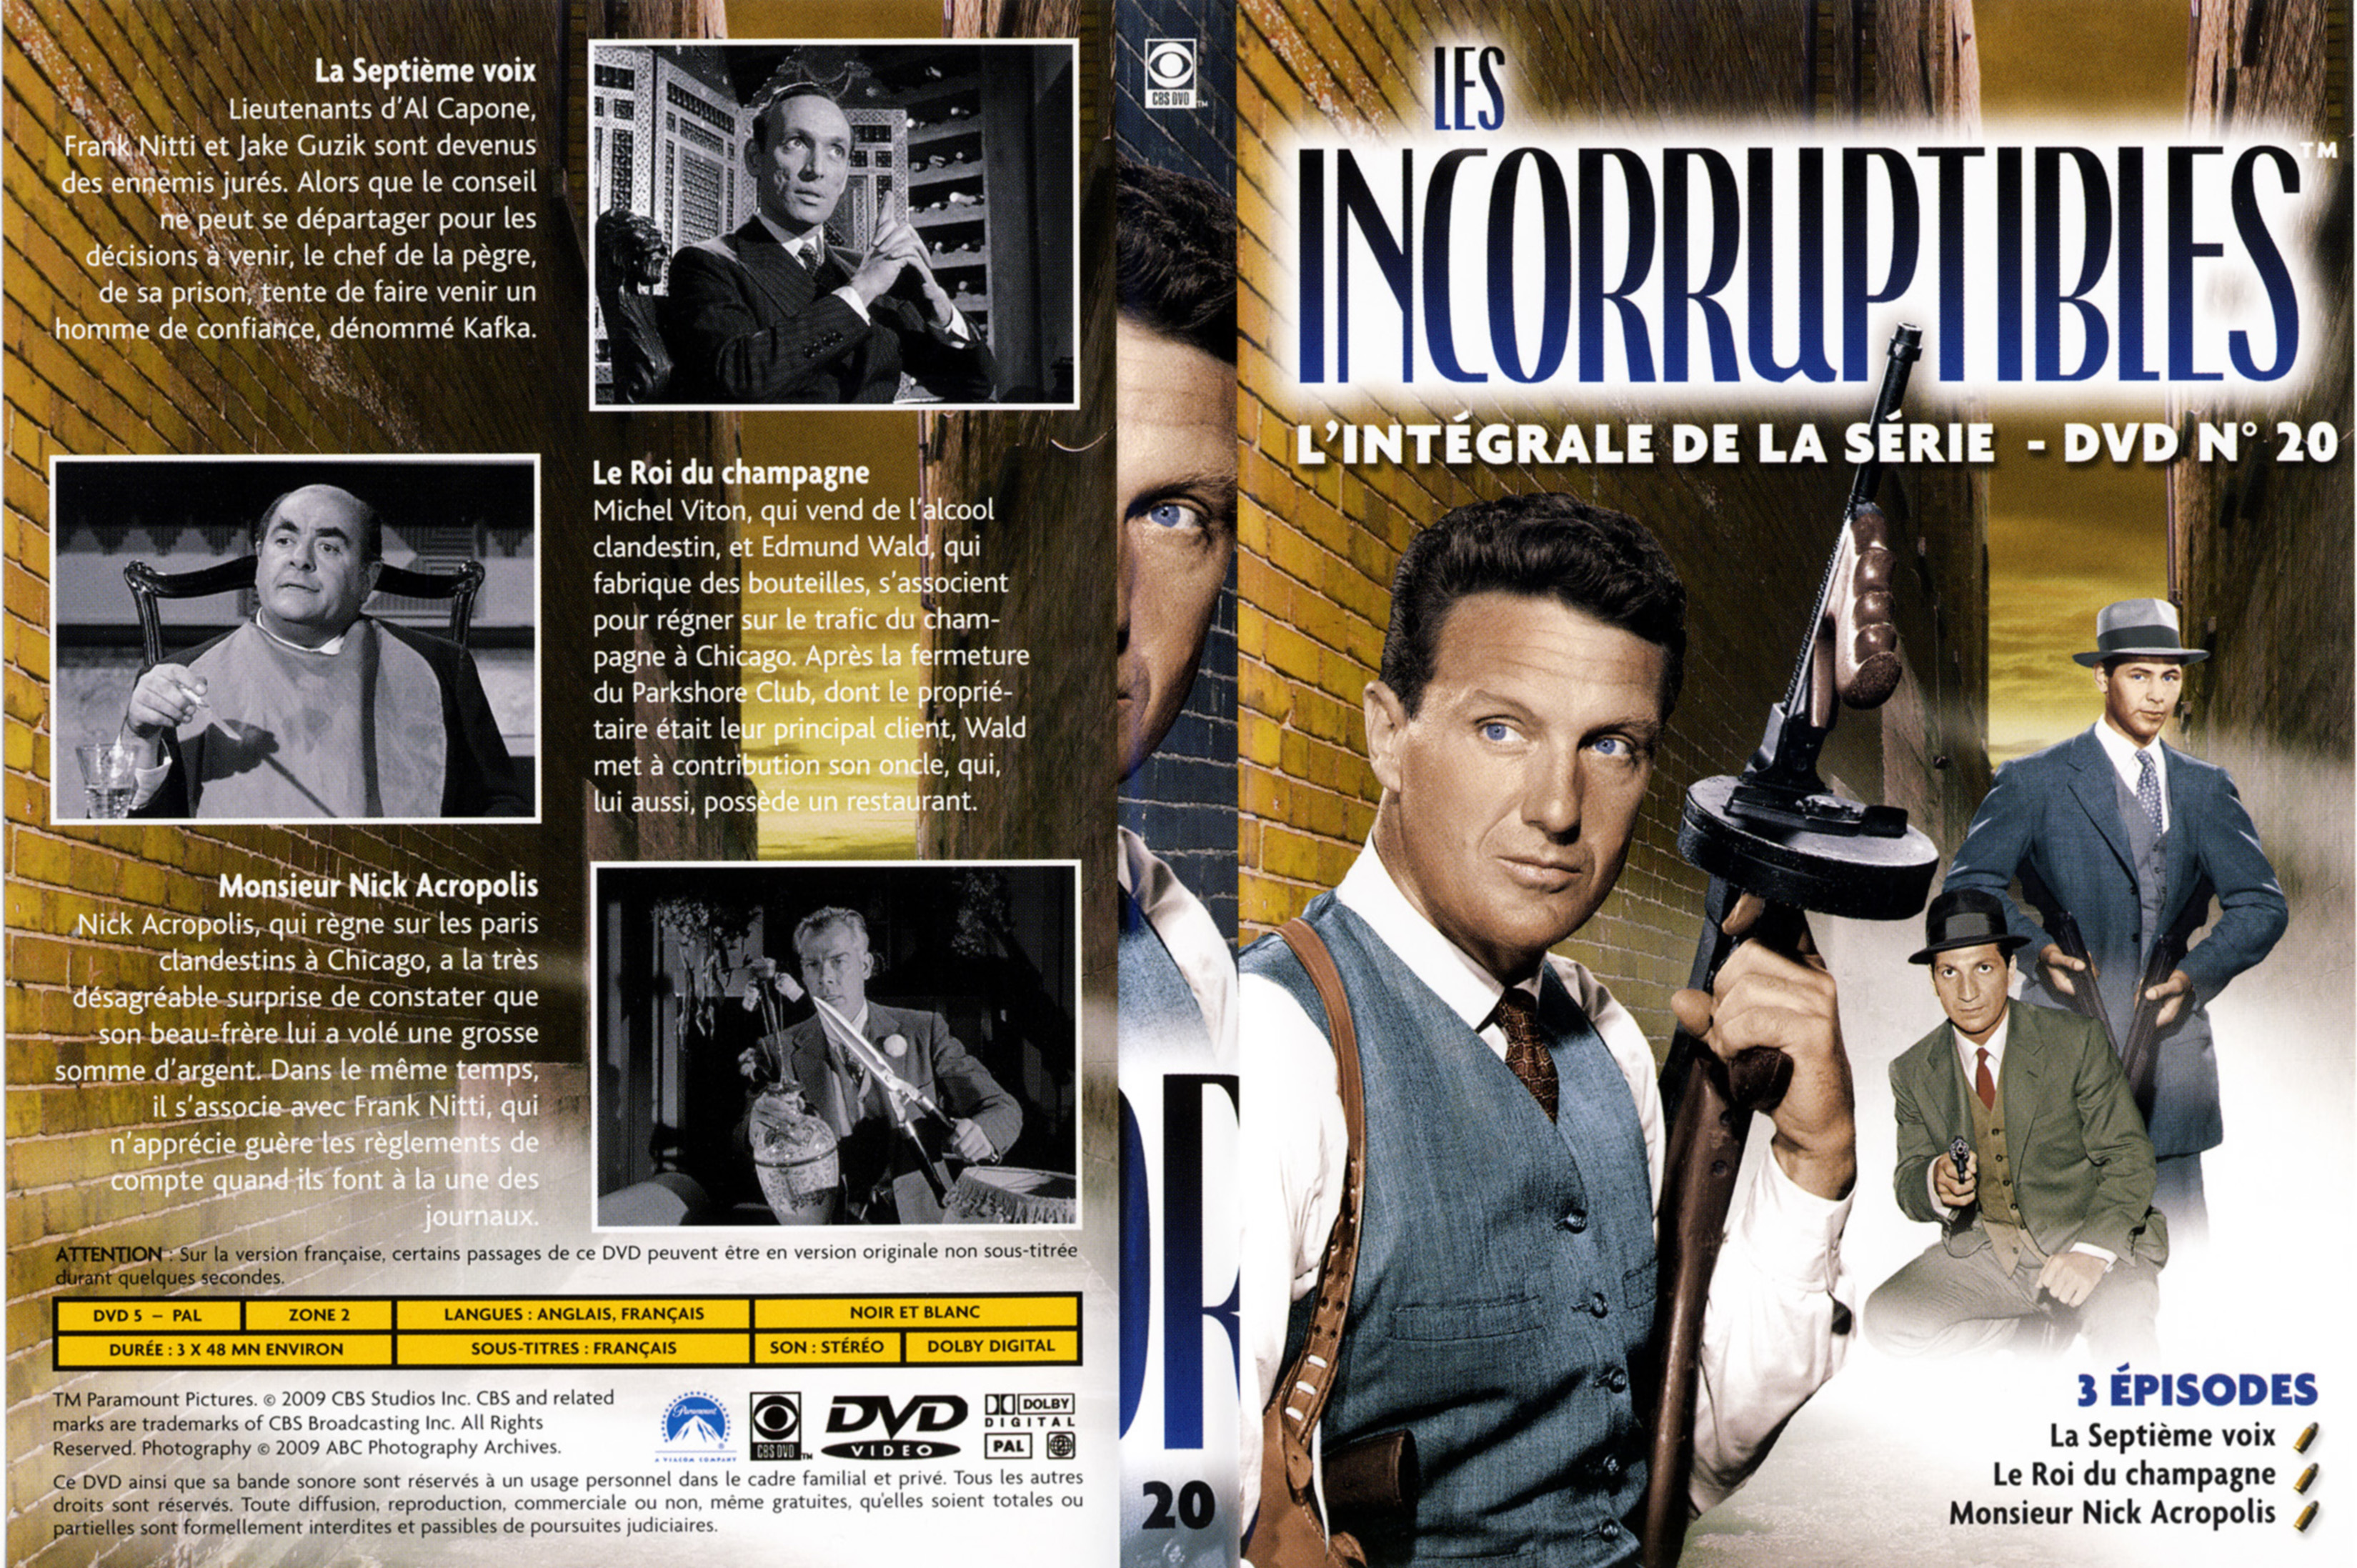 Jaquette DVD Les incorruptibles intgrale DVD 20